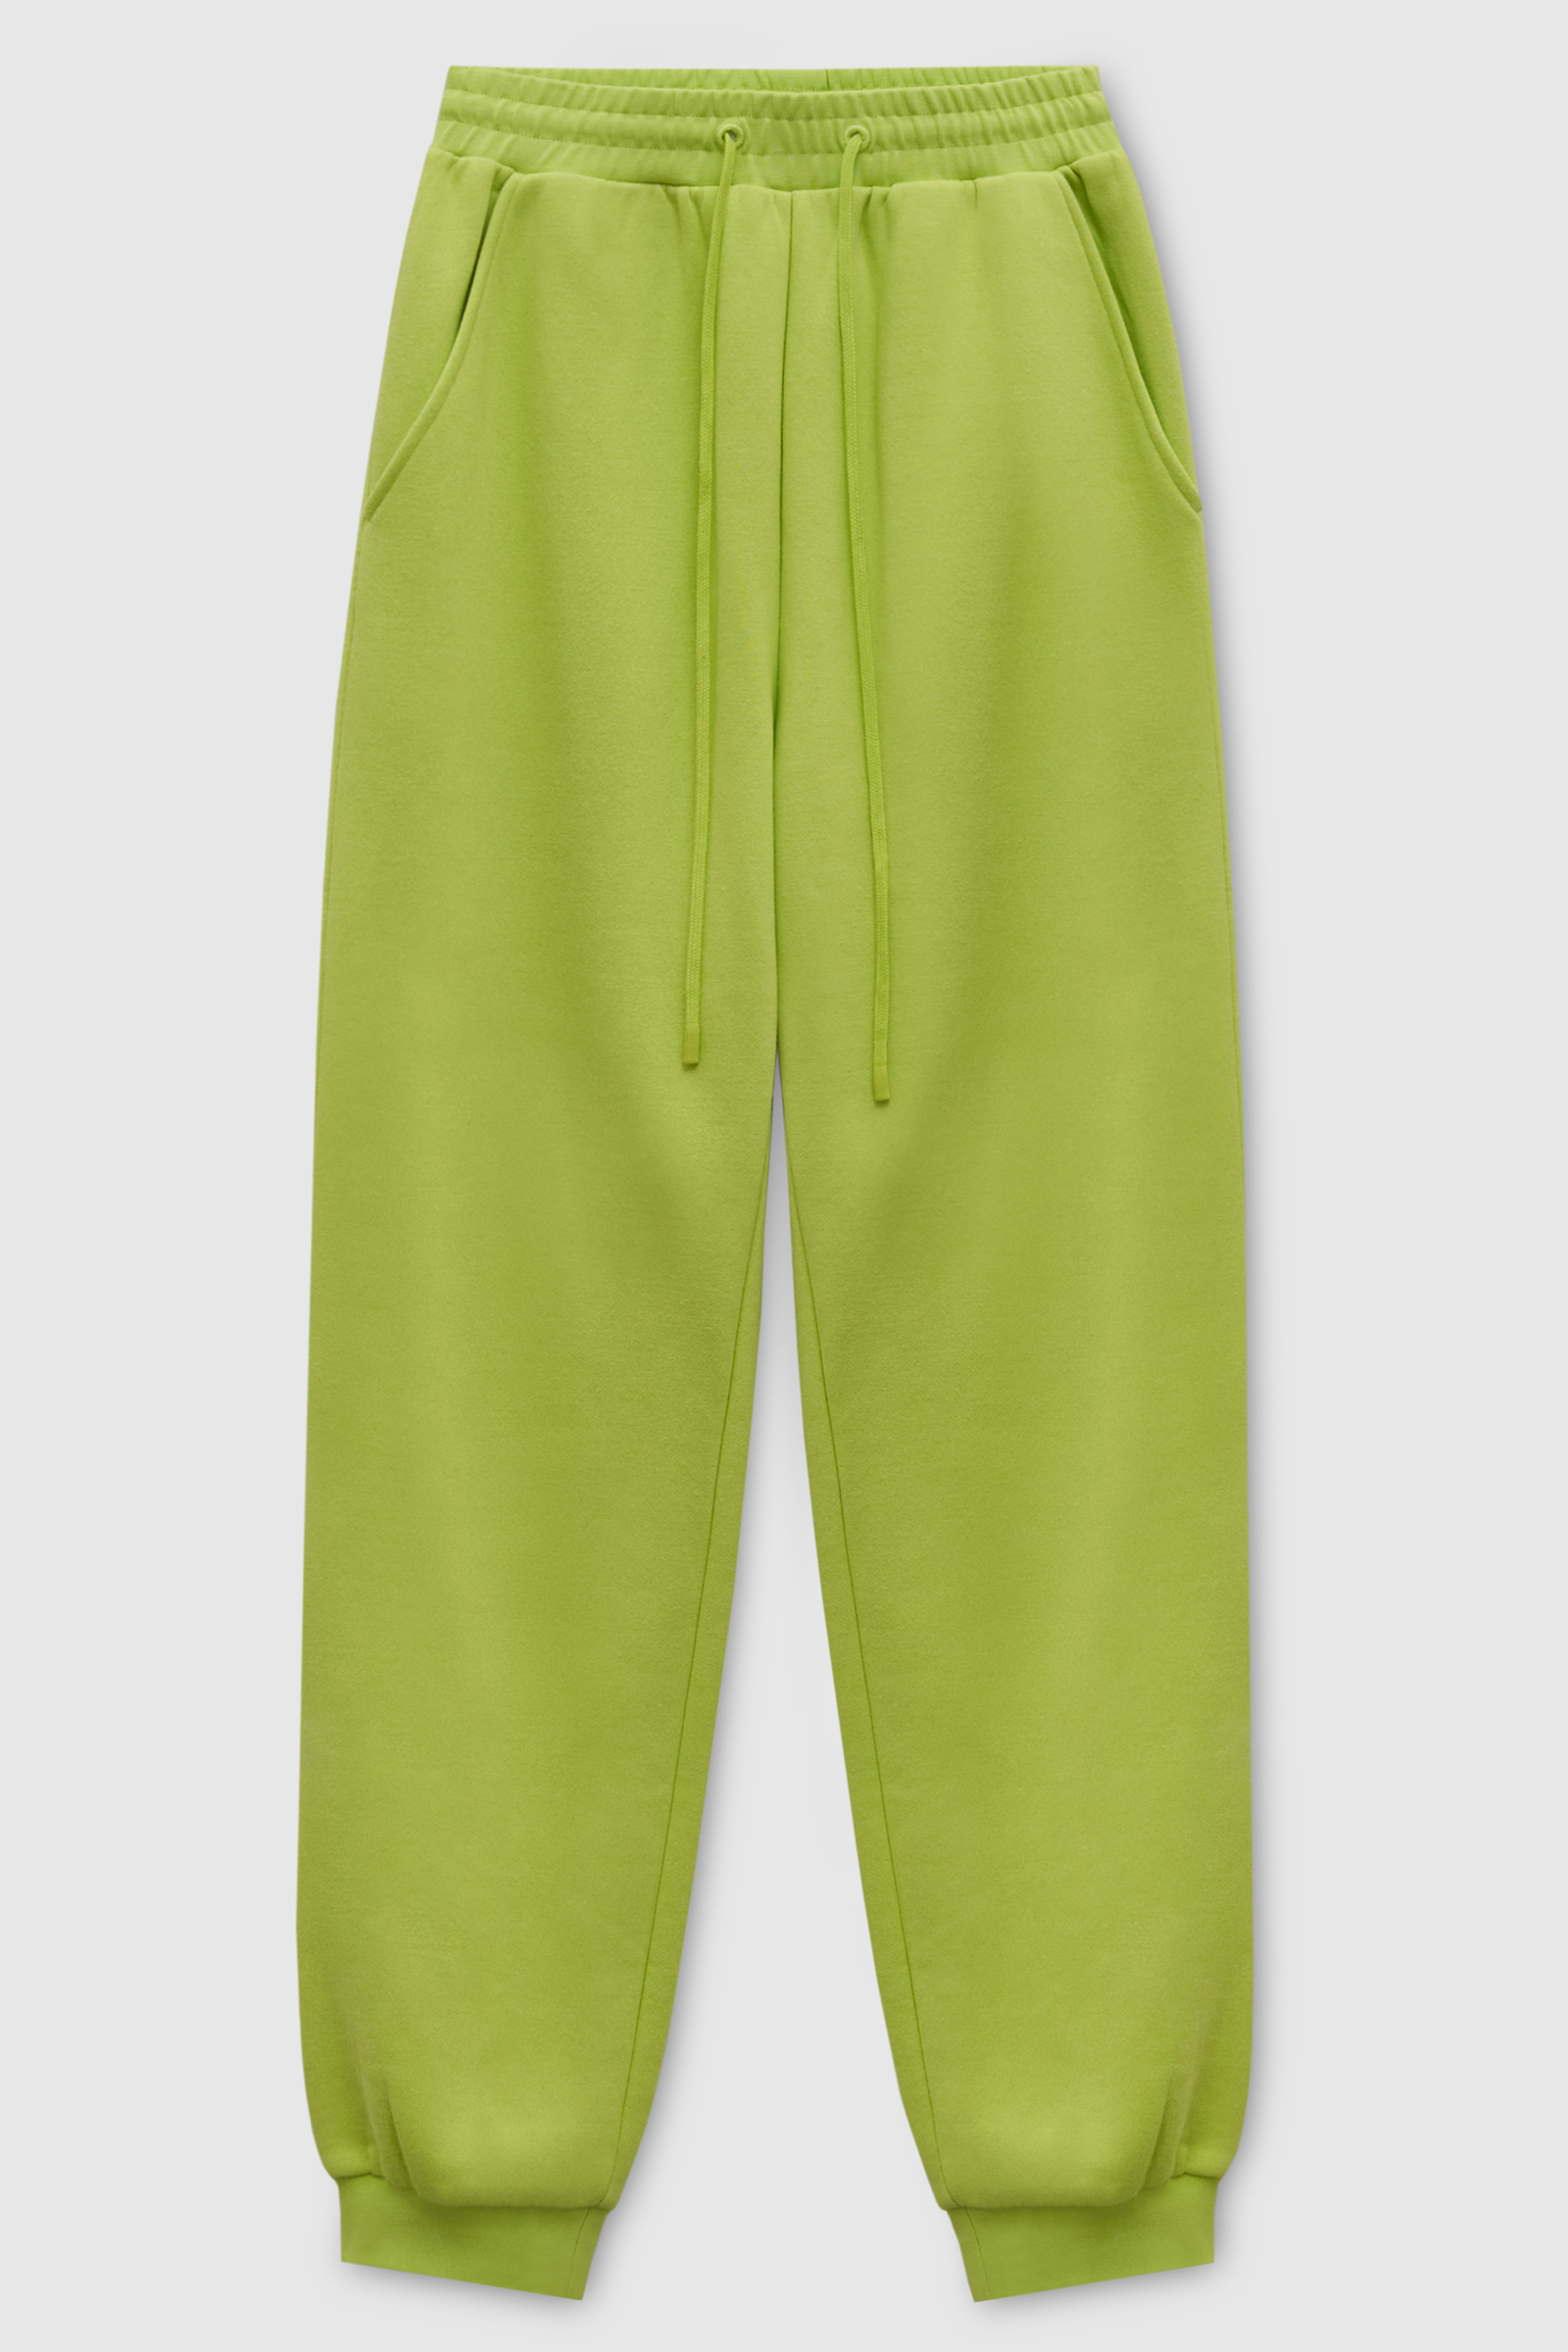 Спортивные брюки женские Finn Flare FAD110143 зеленые S